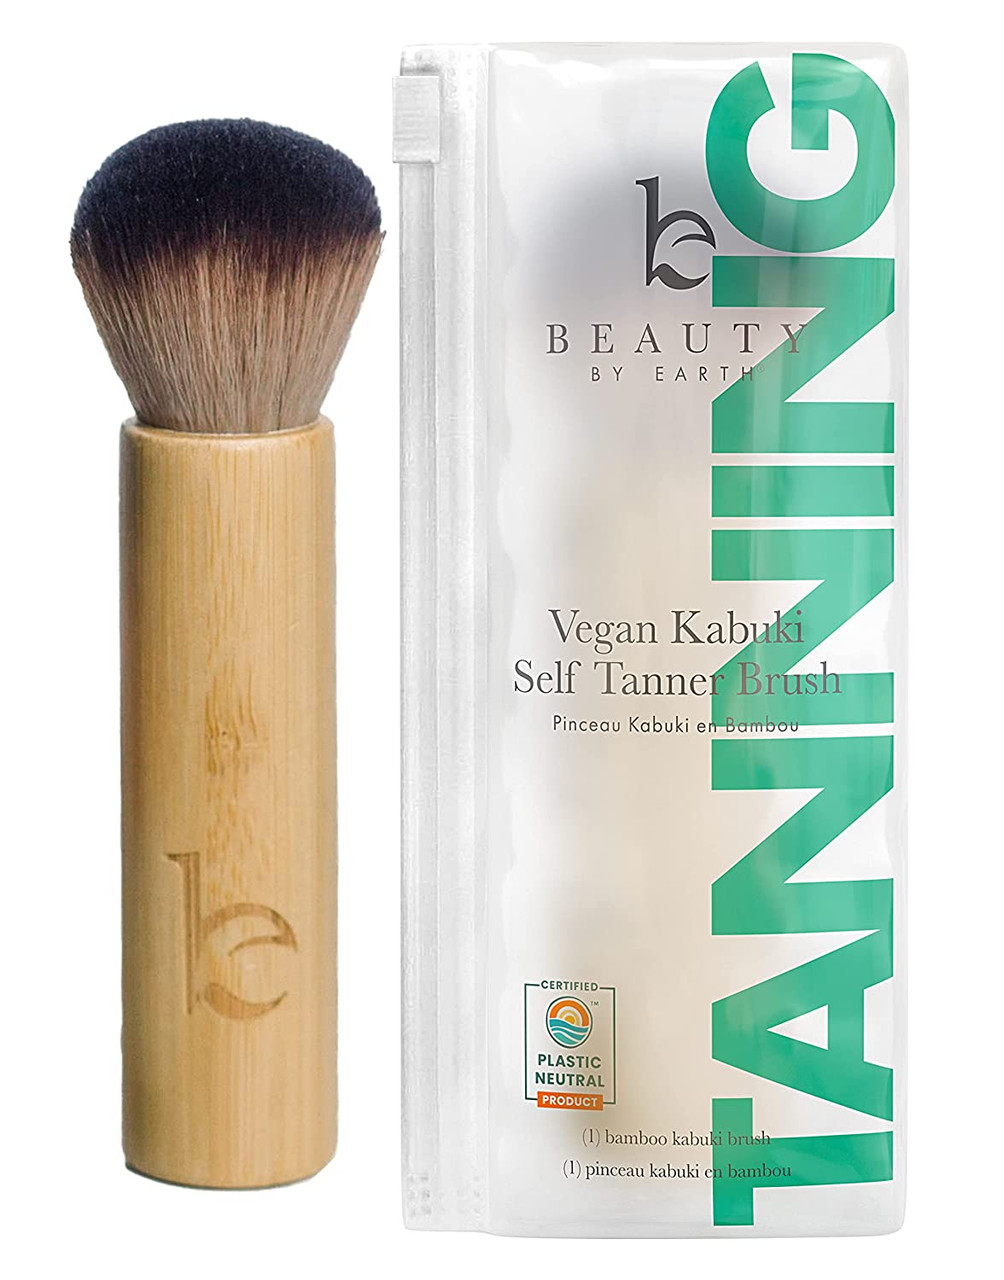 Beauty by Earth Self Tanner Brush Kabuki Brush for Face Foundation Brush  Makeup Brush for Fake